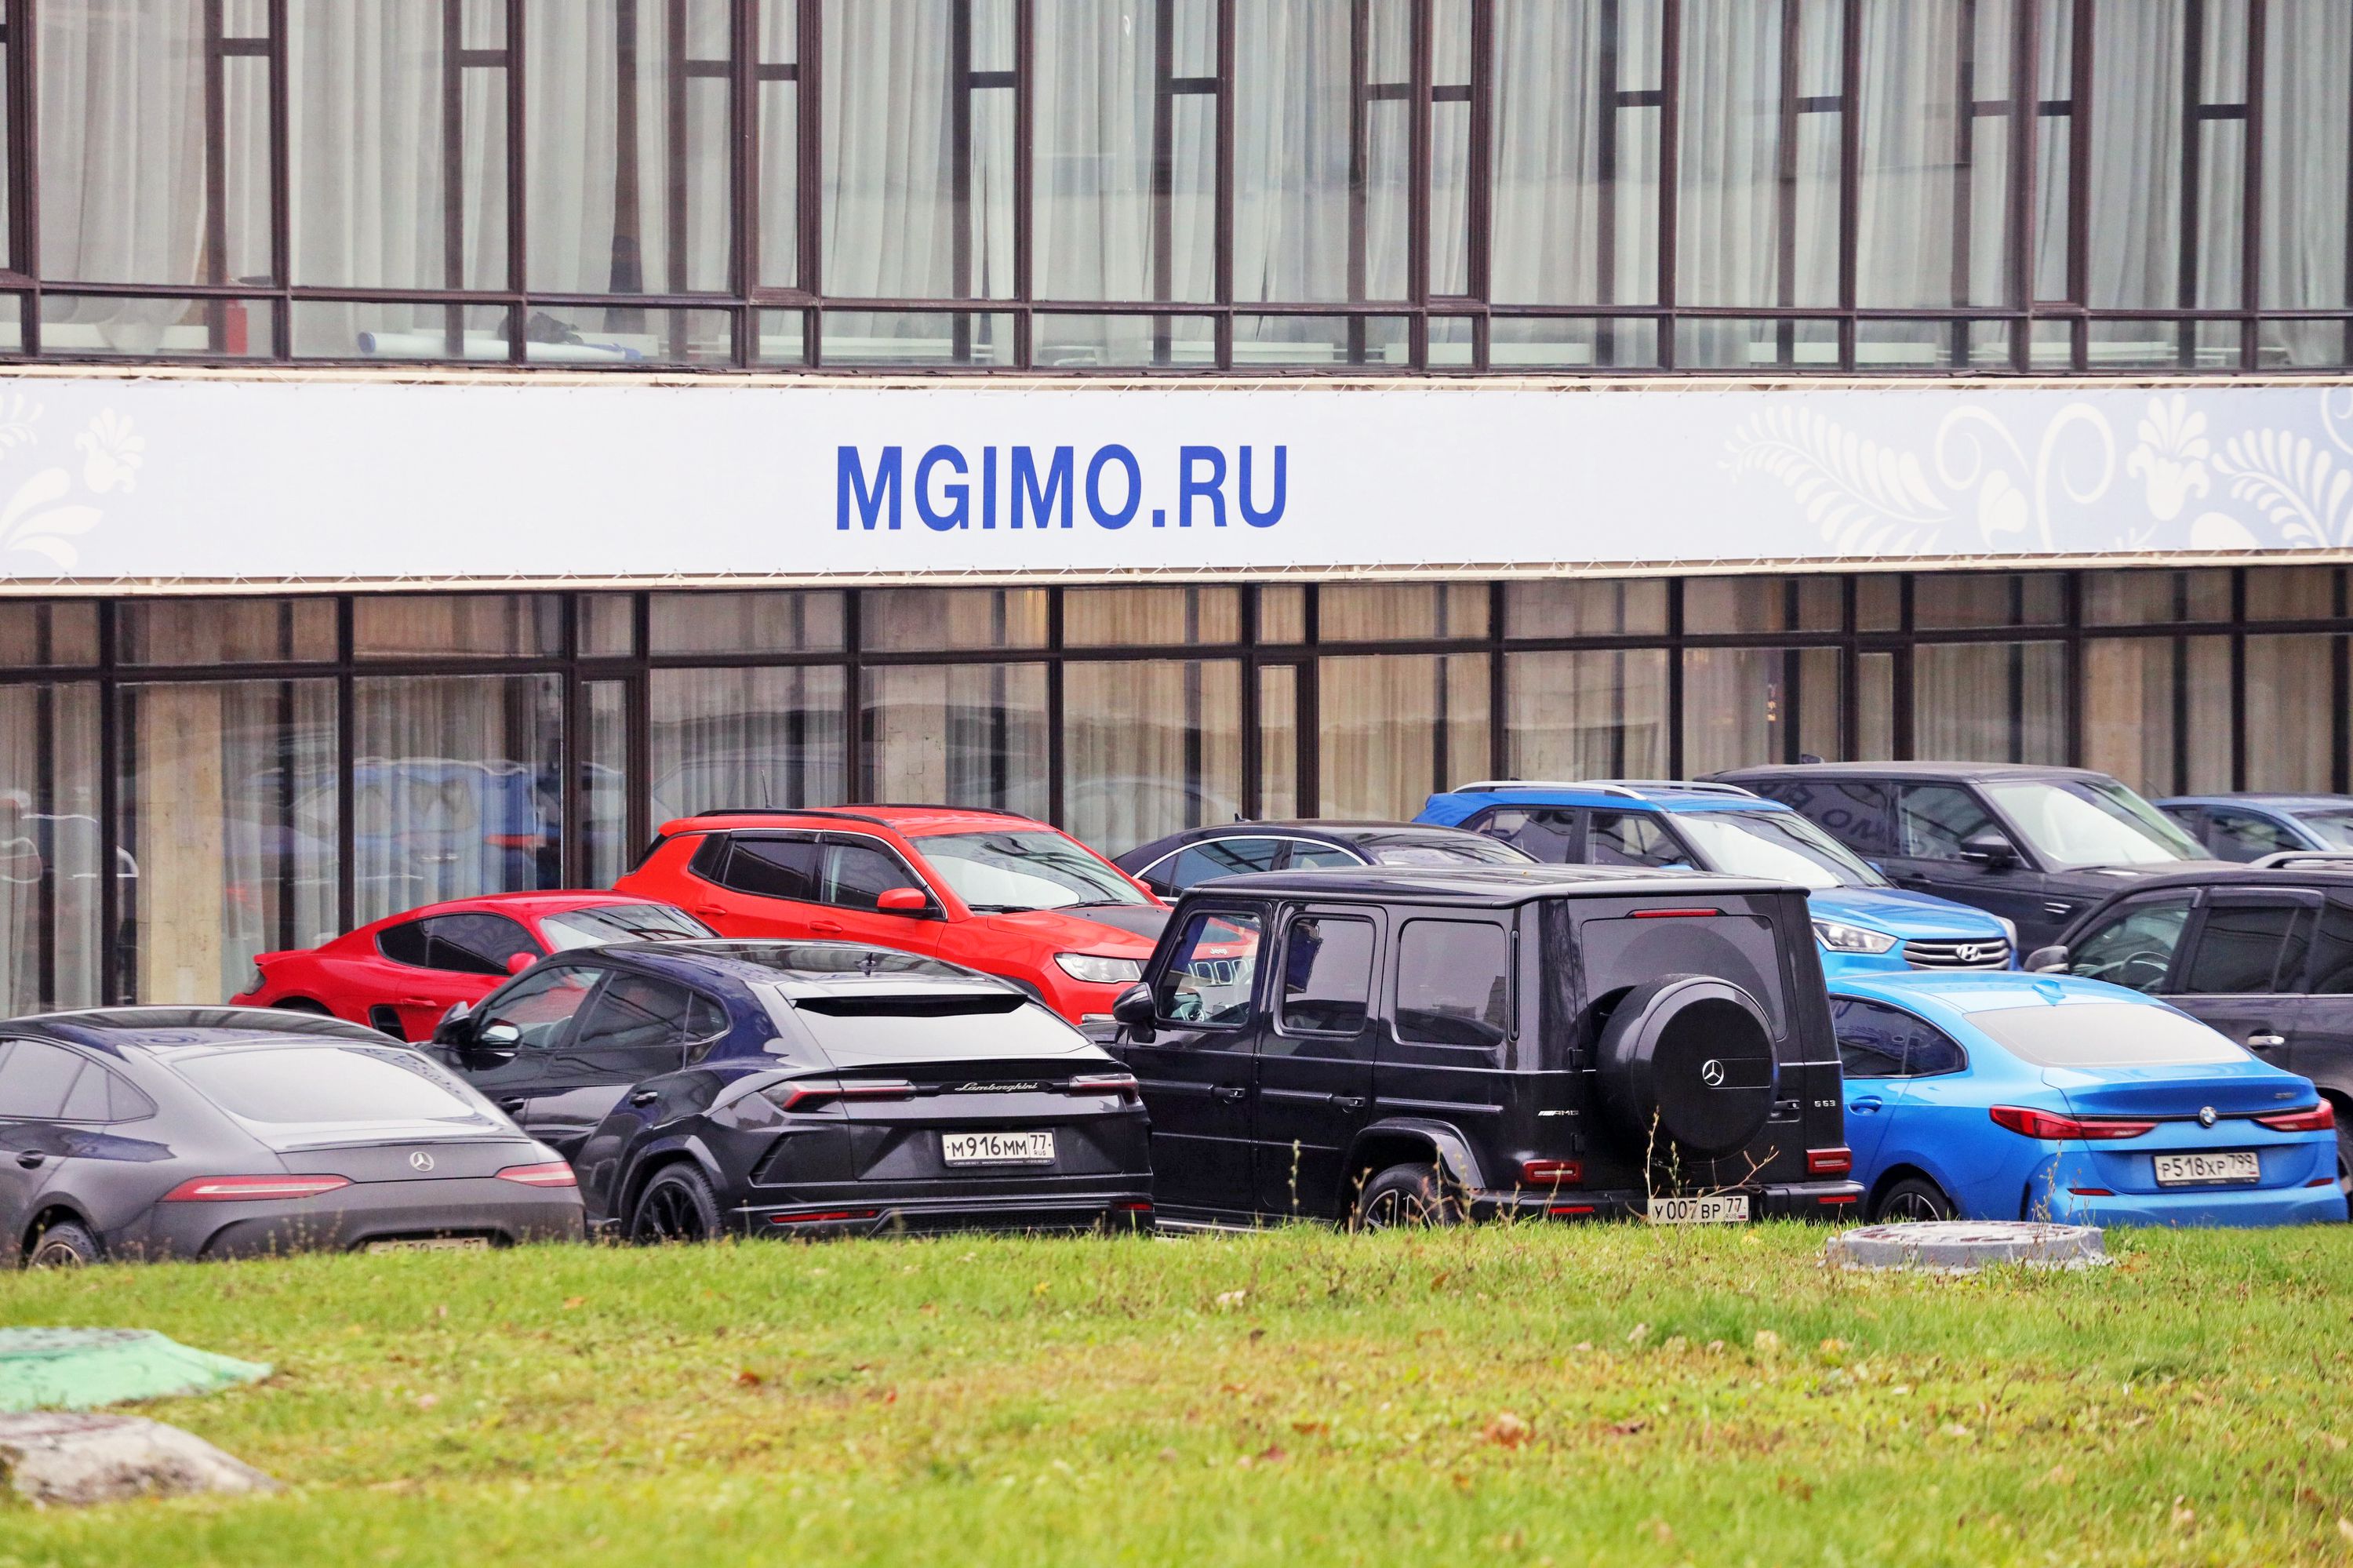 Попасть в МГИМО можно не только на Lamborghini, если участвуешь в конкурсе "РГ".